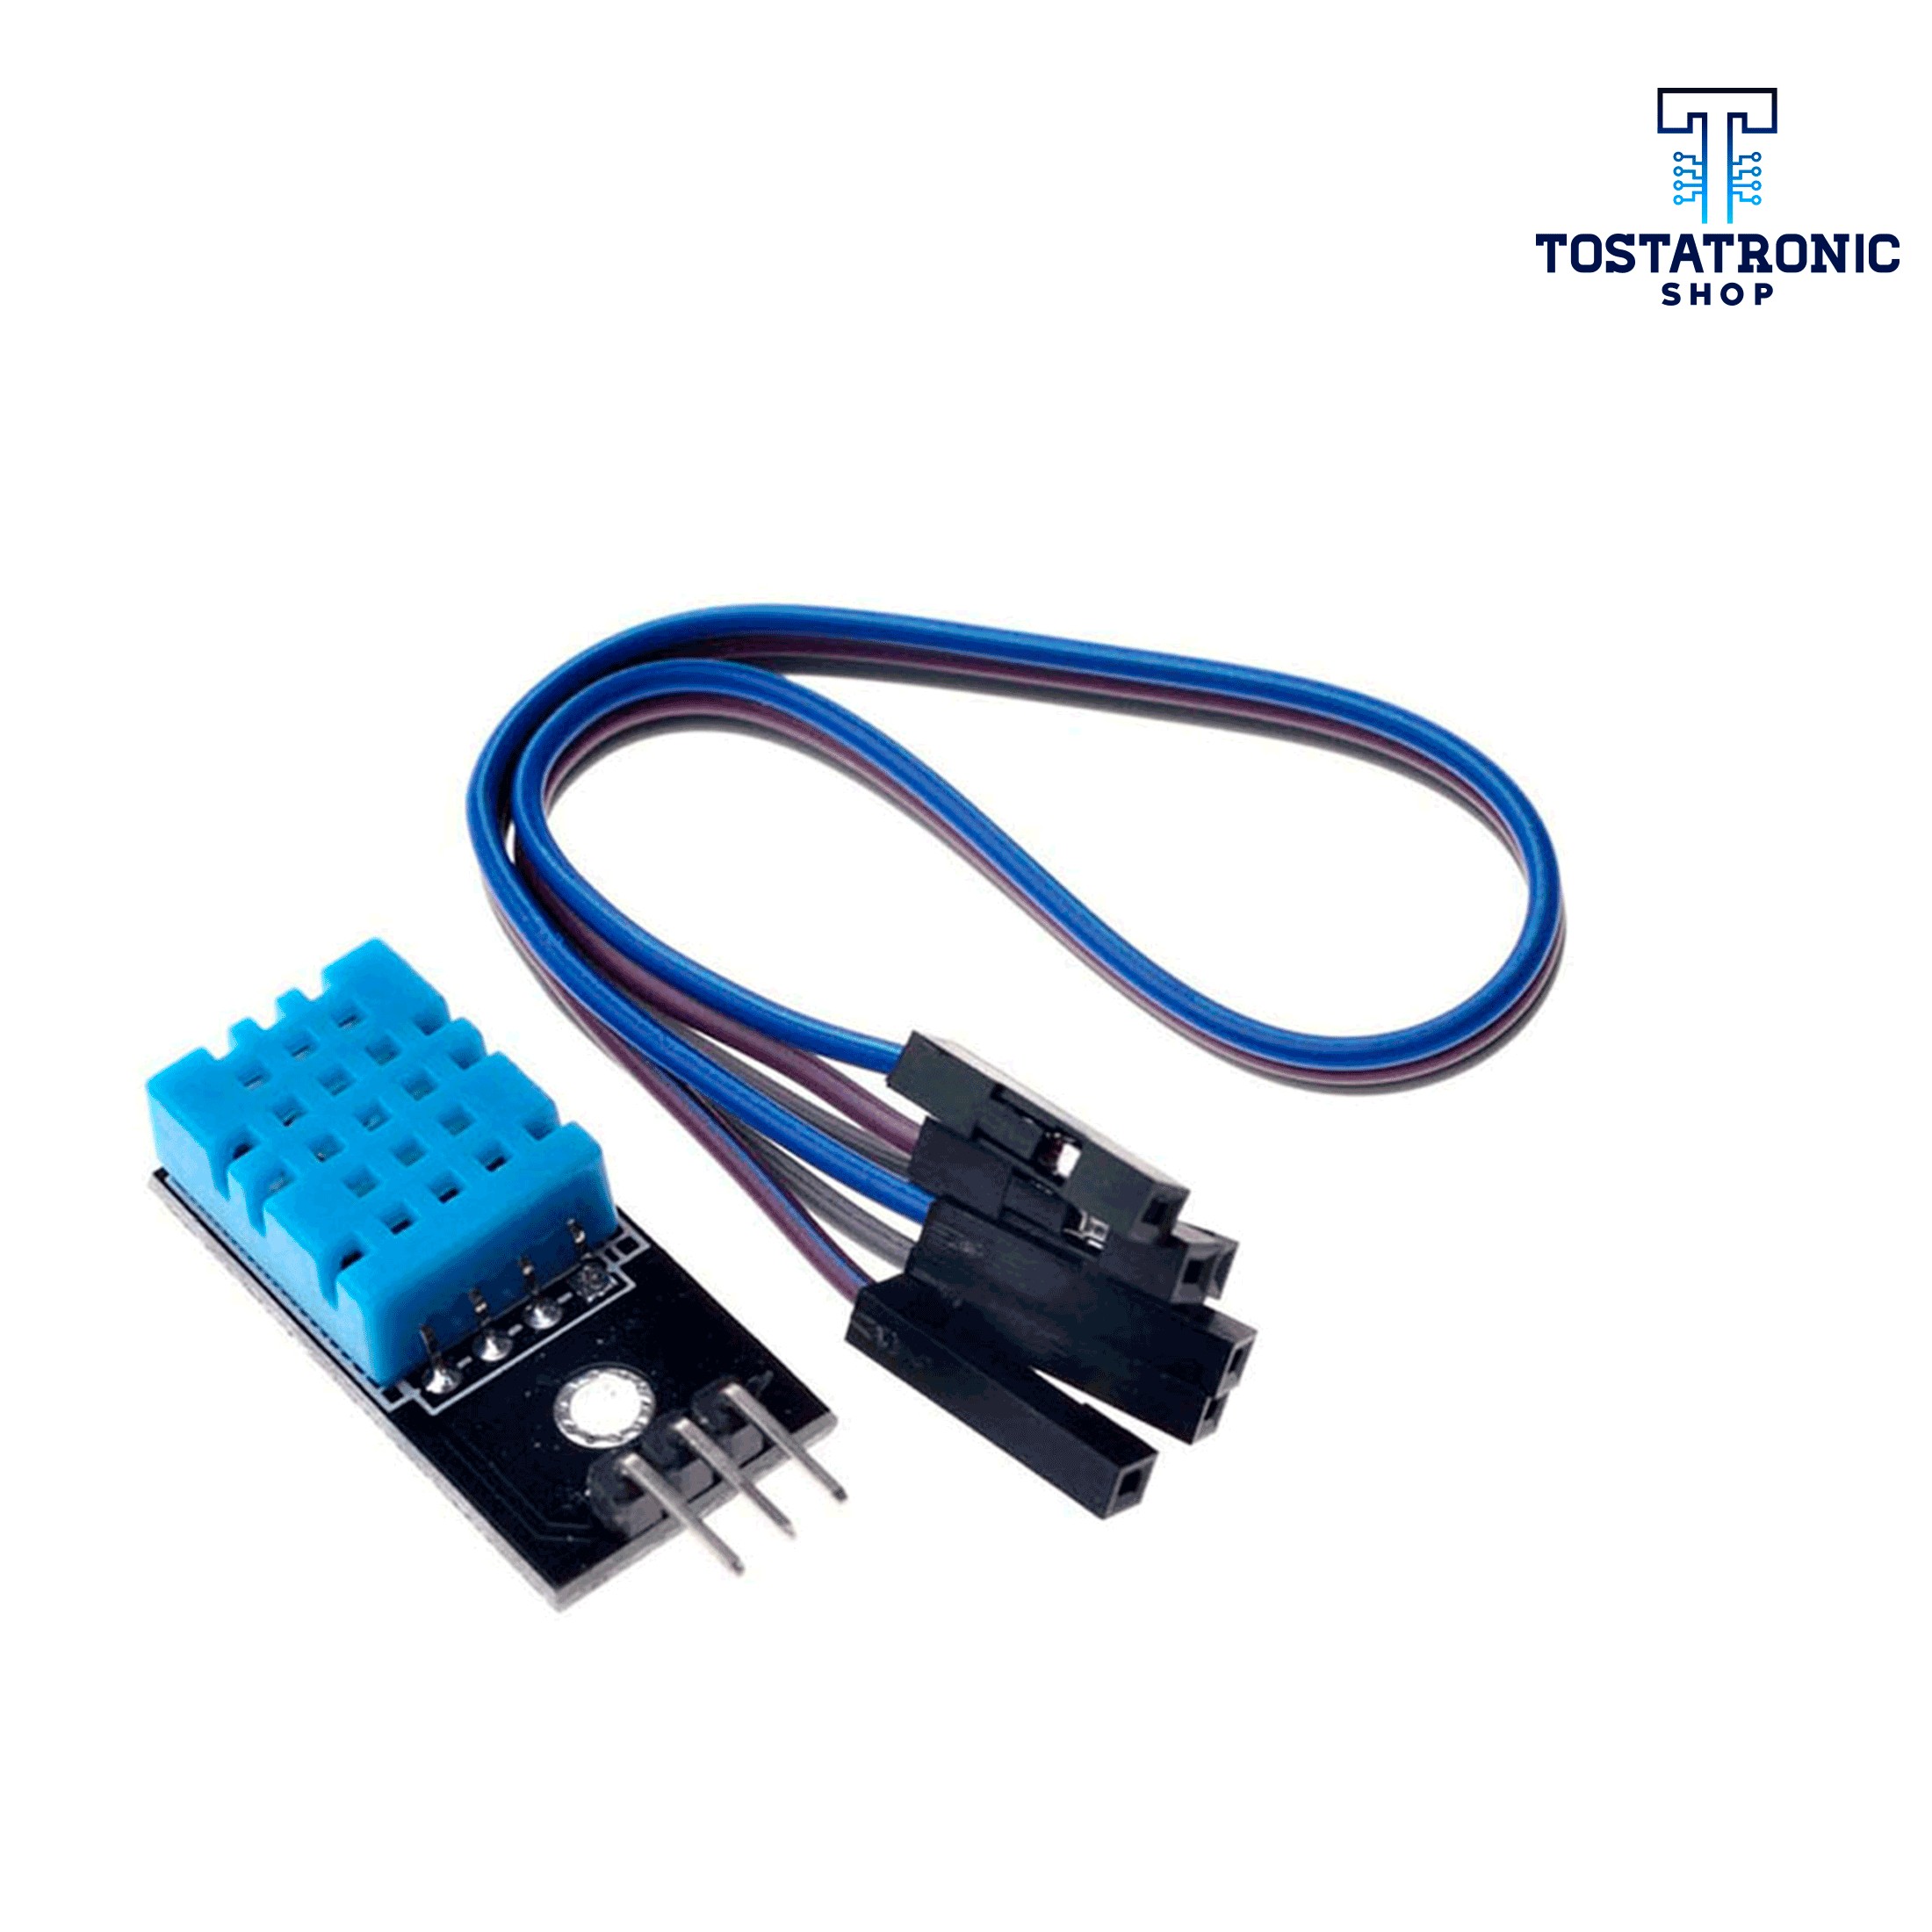 Módulo Sensor de Humedad y Temperatura DHT11 con cables jumper